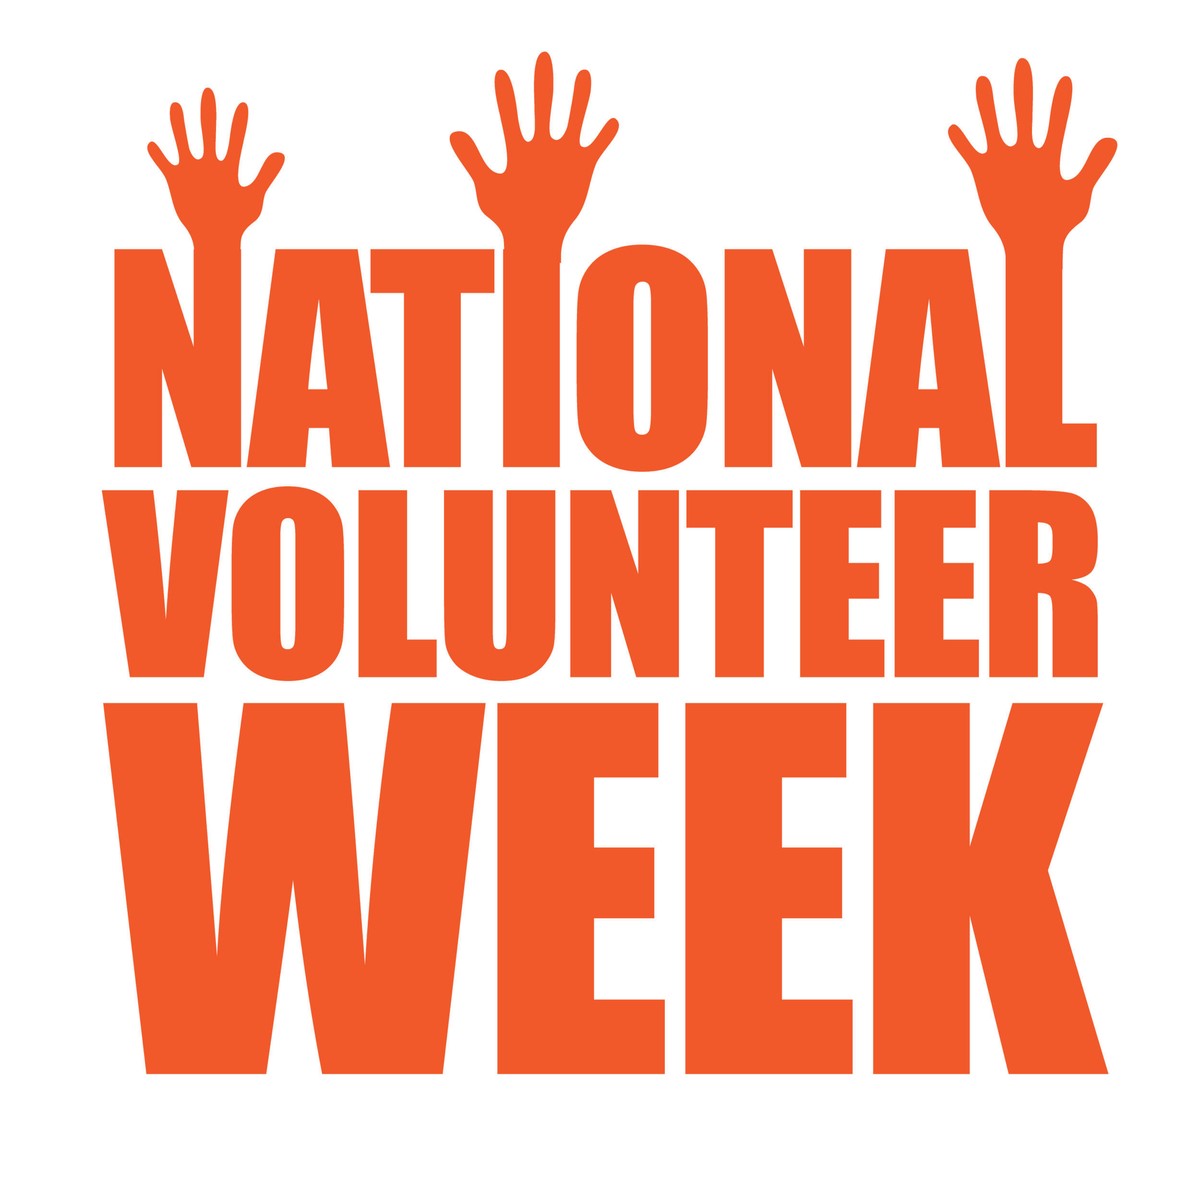 National Volunteer Week logo